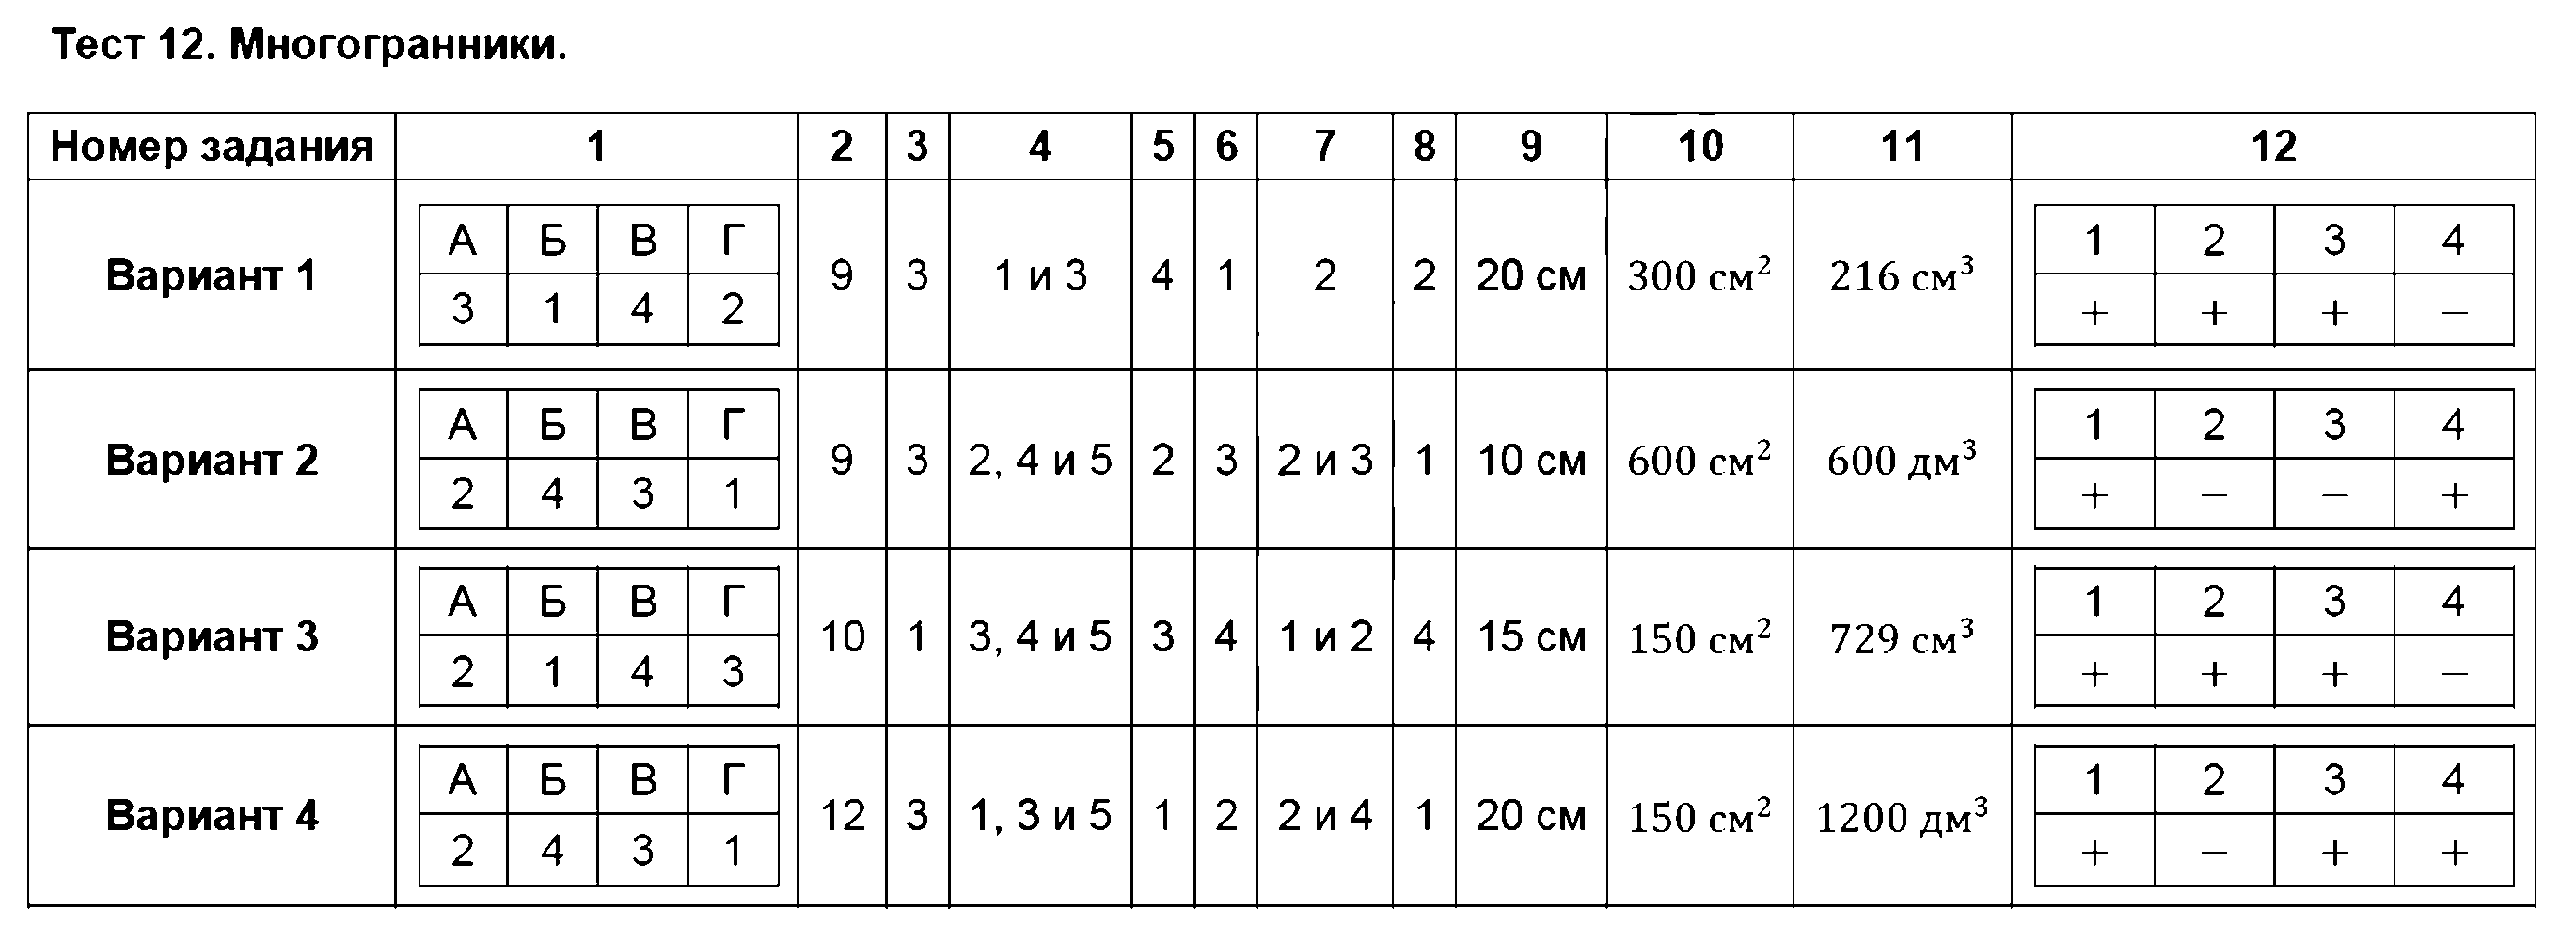 ГДЗ Математика 5 класс - Тест 12. Многогранники